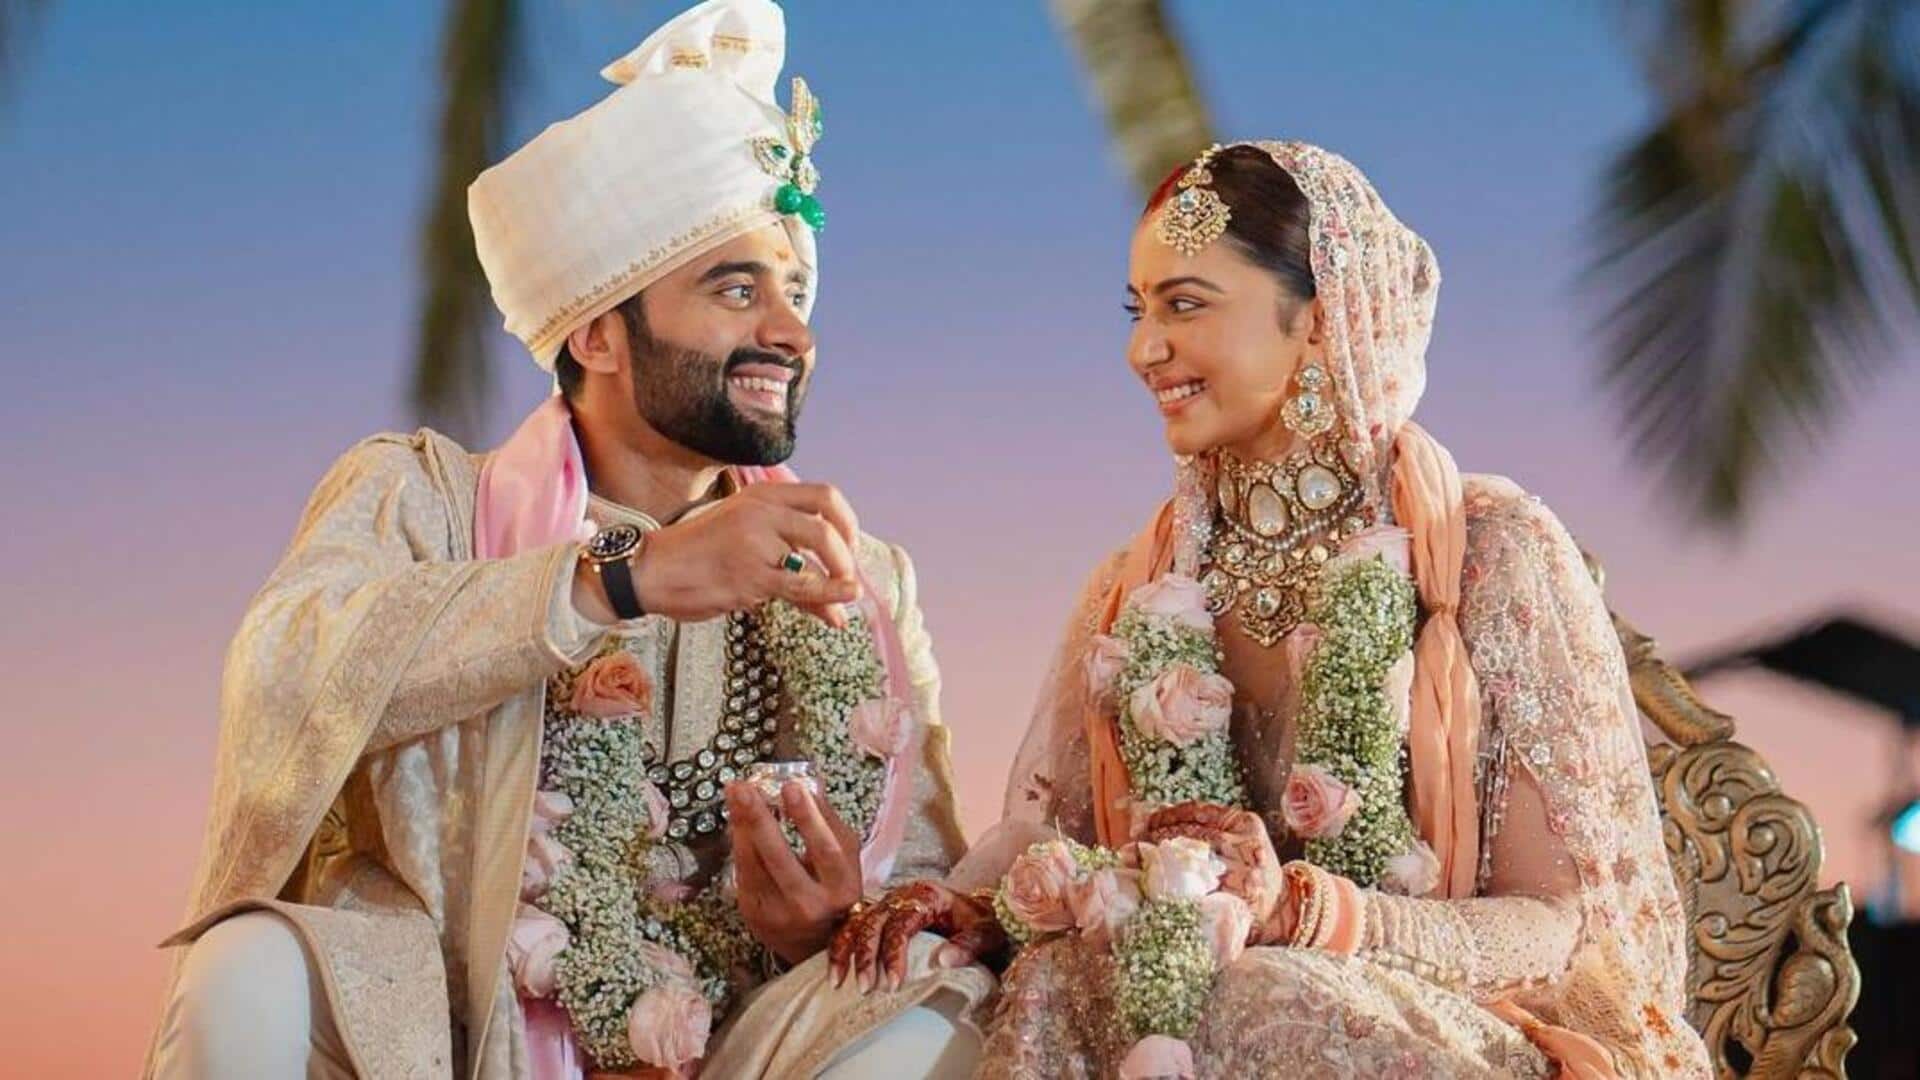 रकुल प्रीत सिंह और जैकी भगनानी की शादी की तस्वीरें आईं सामने, यहां देखें 